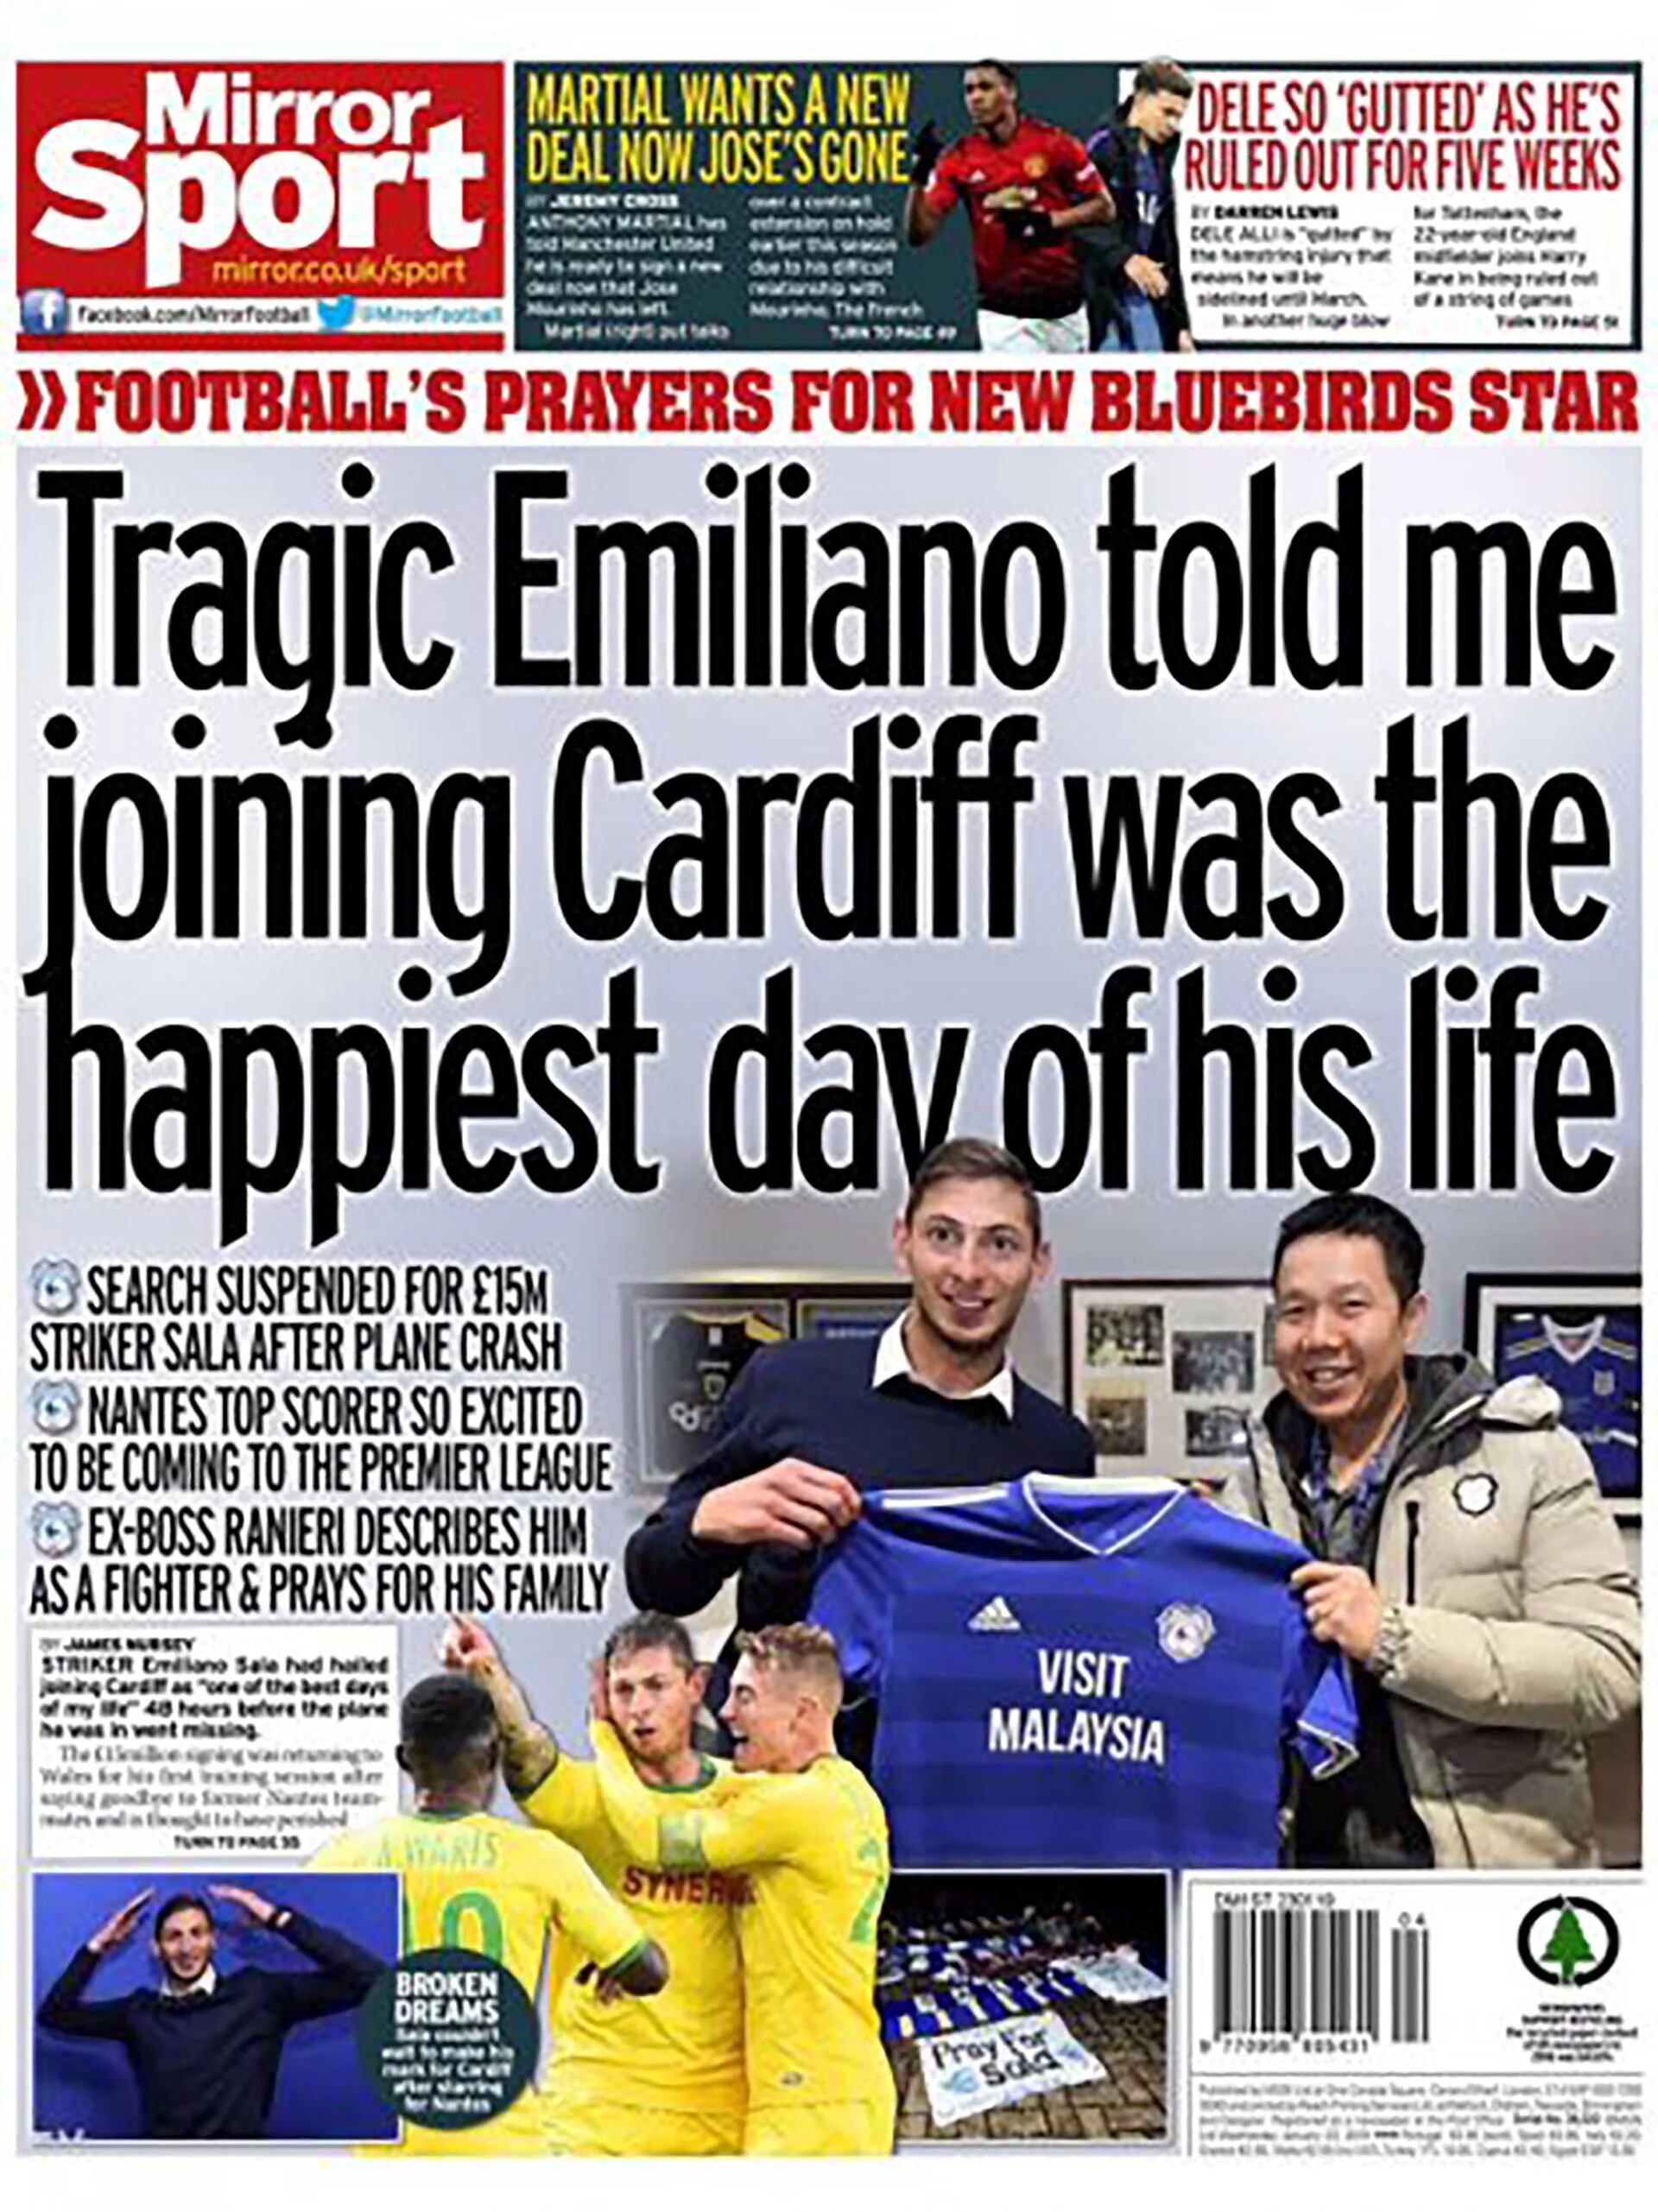 Mirror Sport mencionó la tragedia y tituló con la declaración del dueño del Cardiff y el ex entrenador Ranieri, quien lo describió como un “luchador” y que reza por su familia